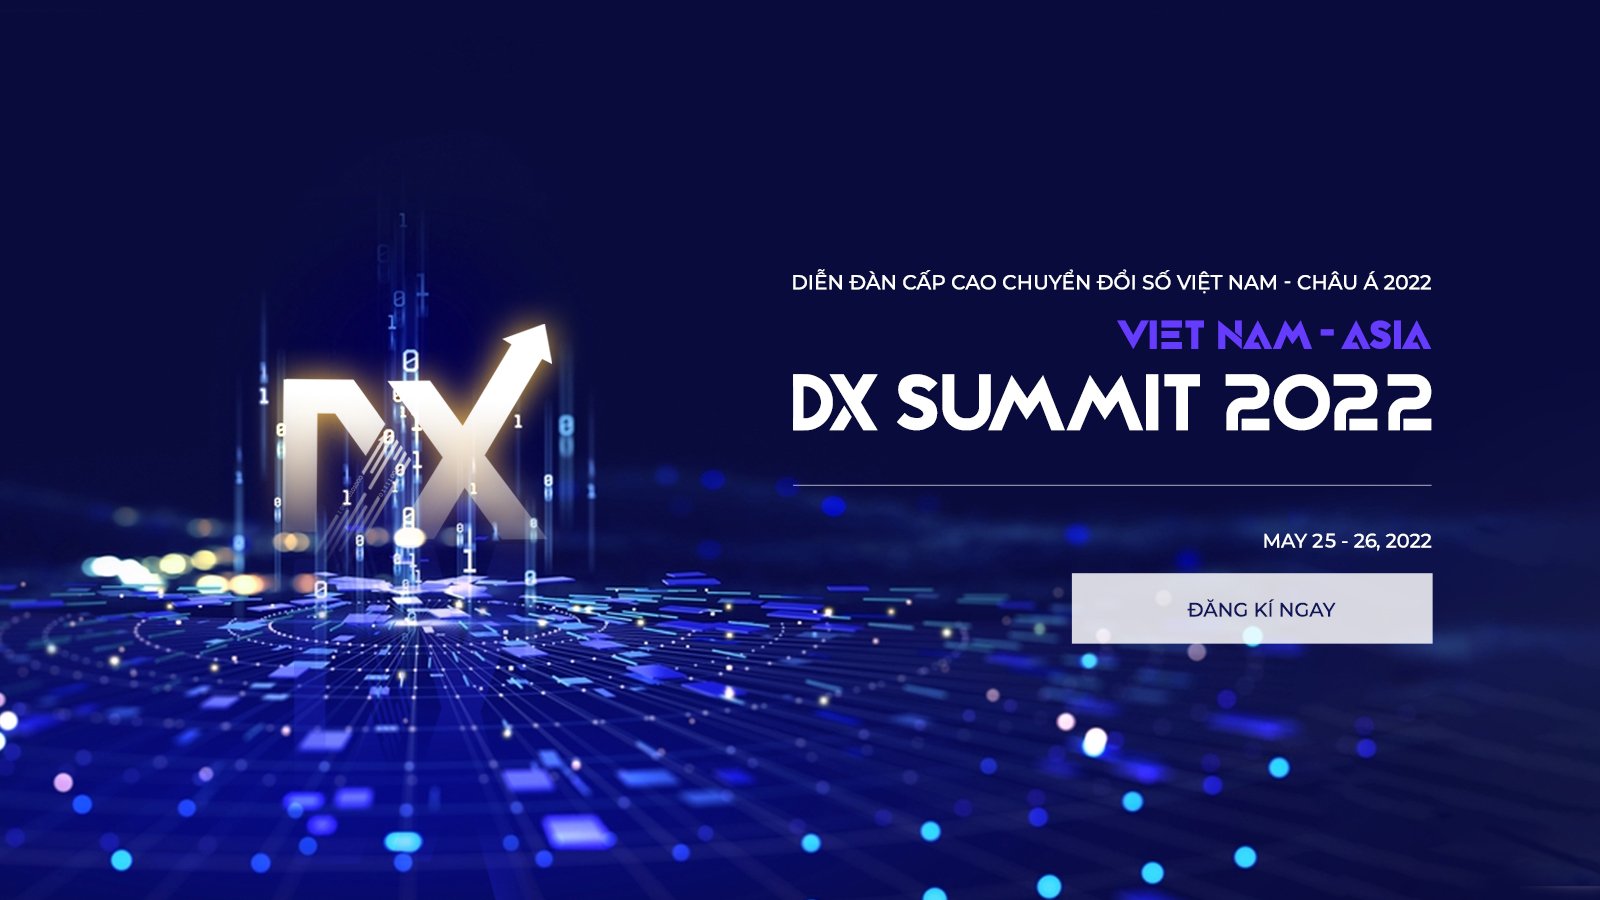 GETFLY hẹn bạn tại sự kiện Vietnam - ASIA DX Summit 2022